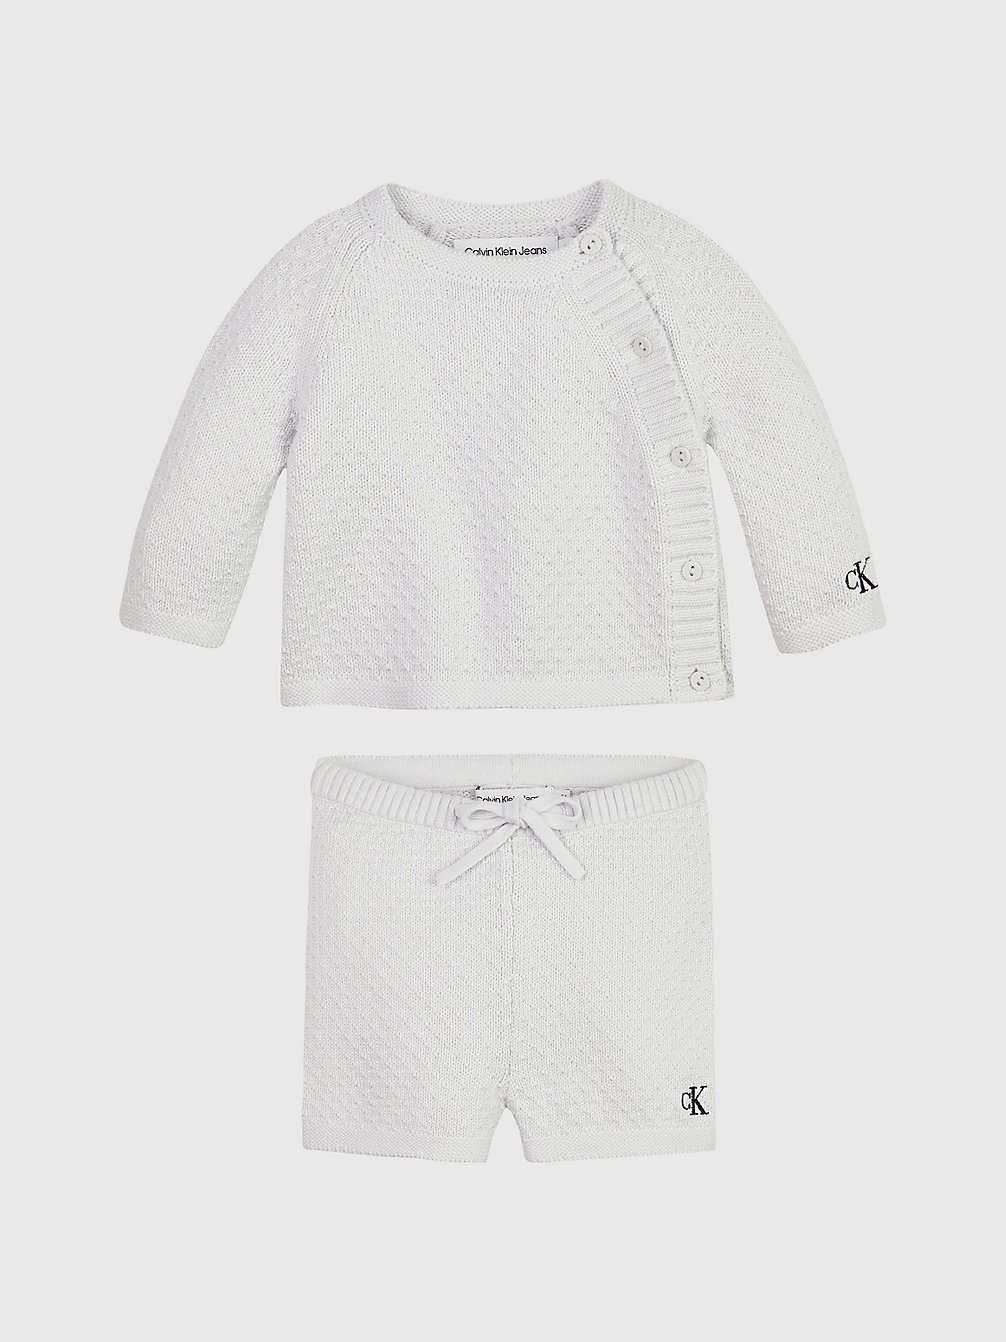 GHOST GREY > Set Mit Pullover- Und Shorts Für Babys > undefined newborn - Calvin Klein